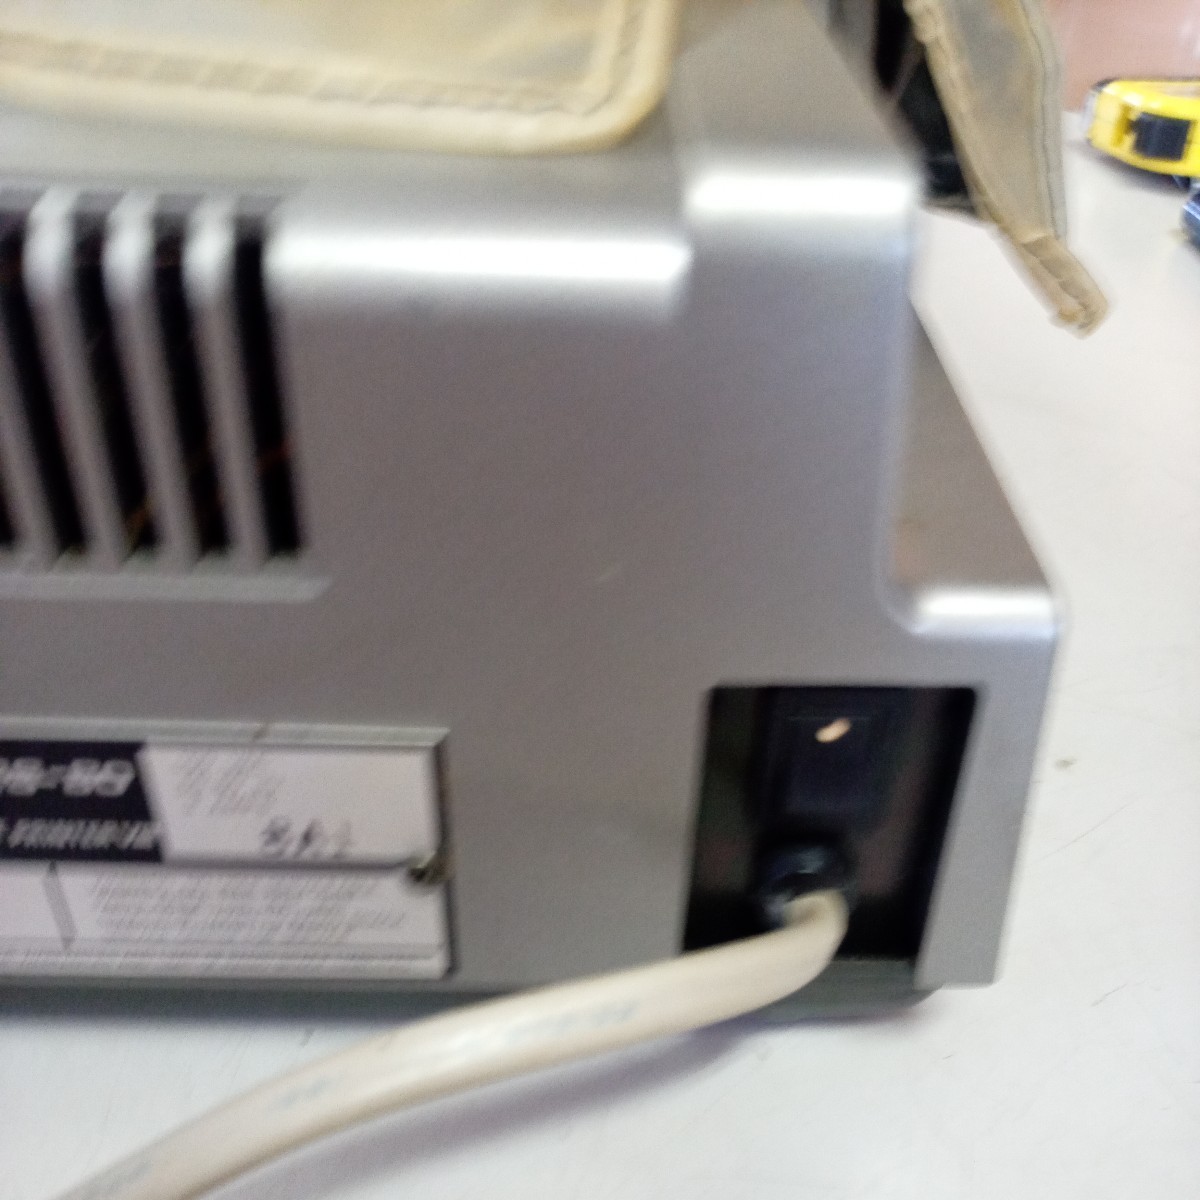  retro PC радио автомобиль kTRS-80 персональный компьютер Radio shack антиквариат товар электризация проверка текущее состояние товар прекрасный товар 